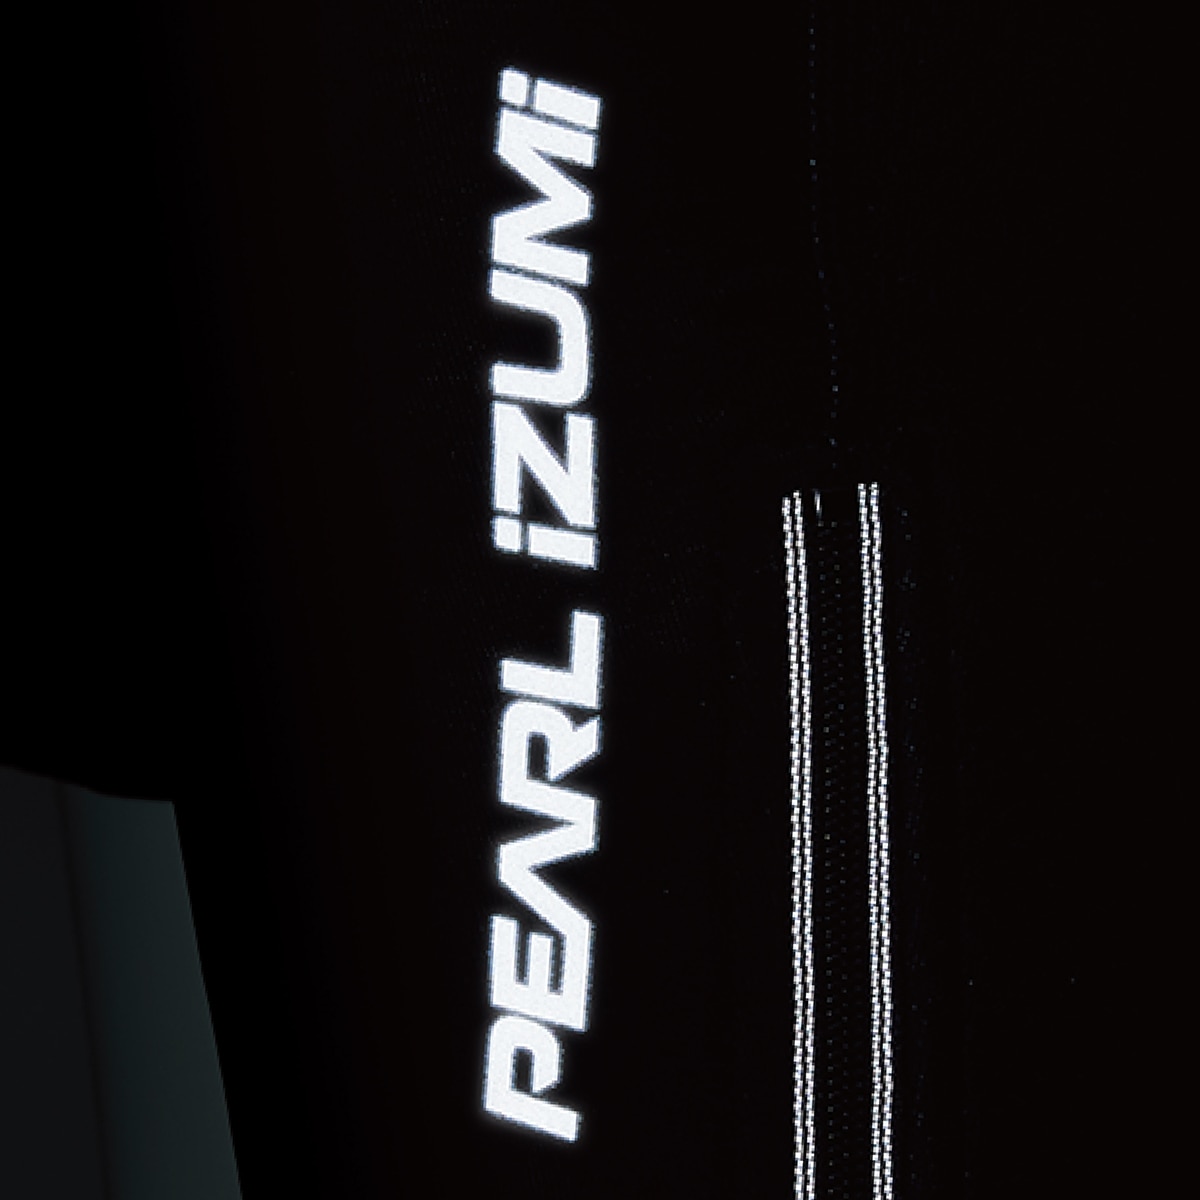 PEARL-IZUMI パールイズミ タイツ WB6500-3DX ウィンドブレーク レーサー タイツ(ワイドサイズ) ブラック BS  自転車・パーツ・ウェア通販 ワイズロードオンライン